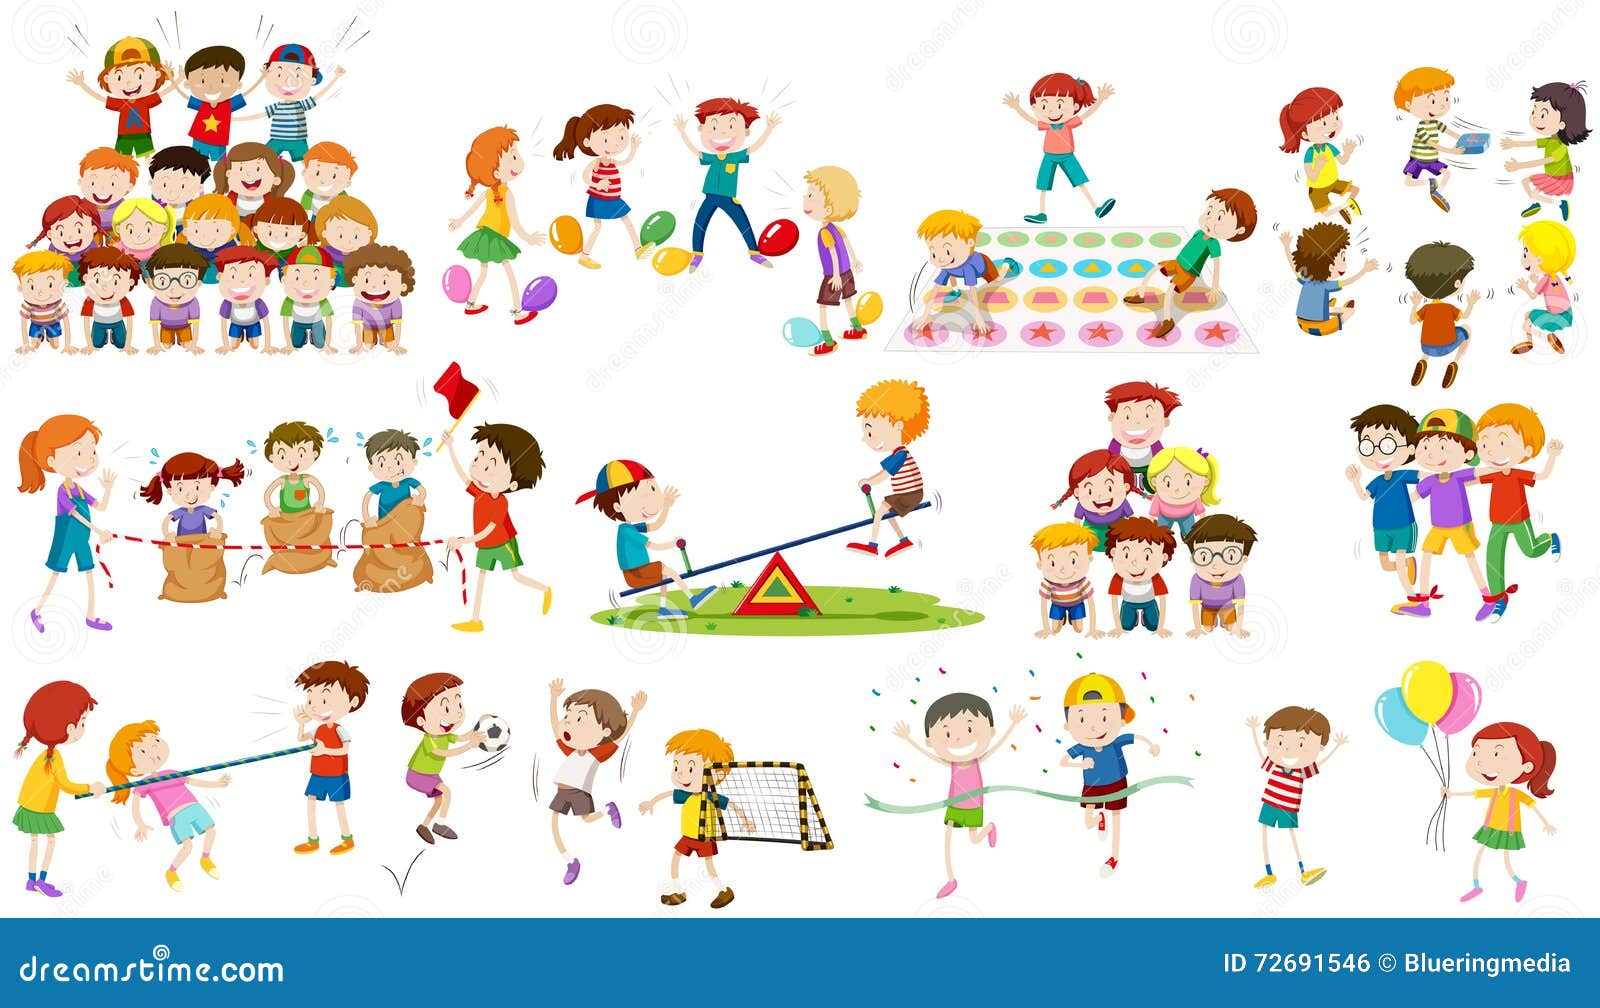 geschenk serveerster gelijktijdig Children Play Different Kind of Game Stock Vector - Illustration of play,  balloons: 72691546